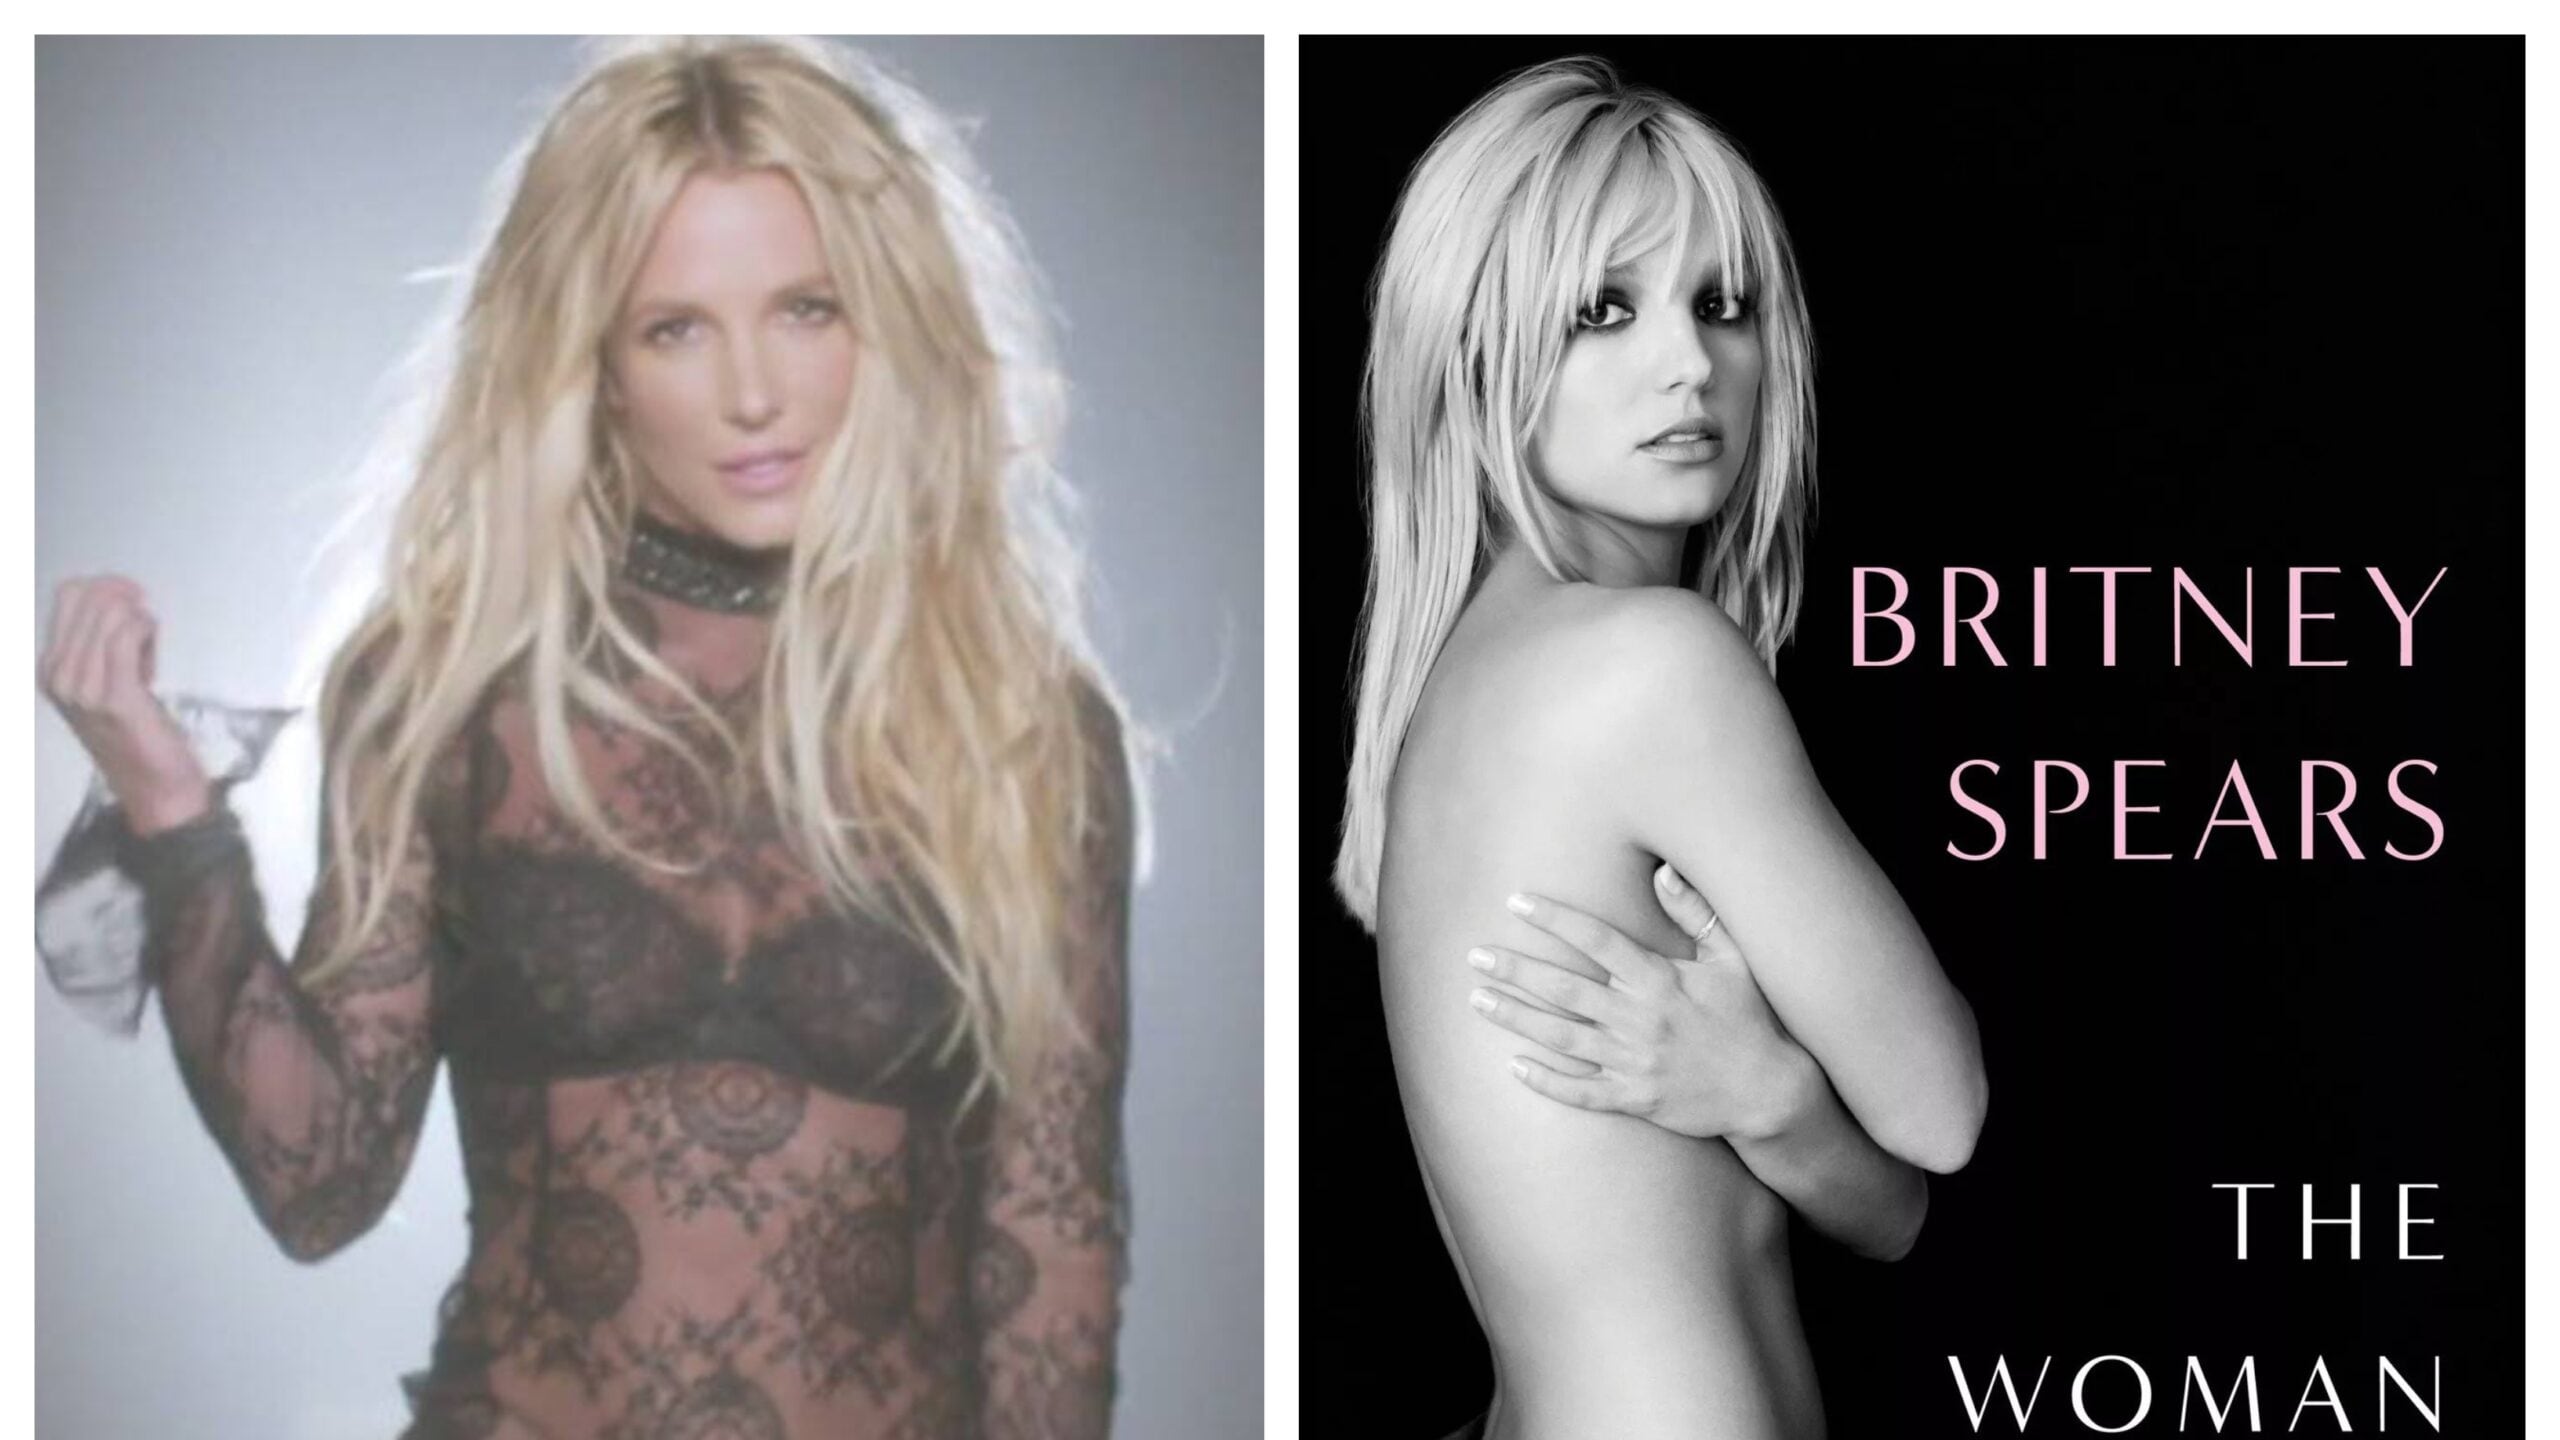 "La mujer que soy": libro de Britney Spears